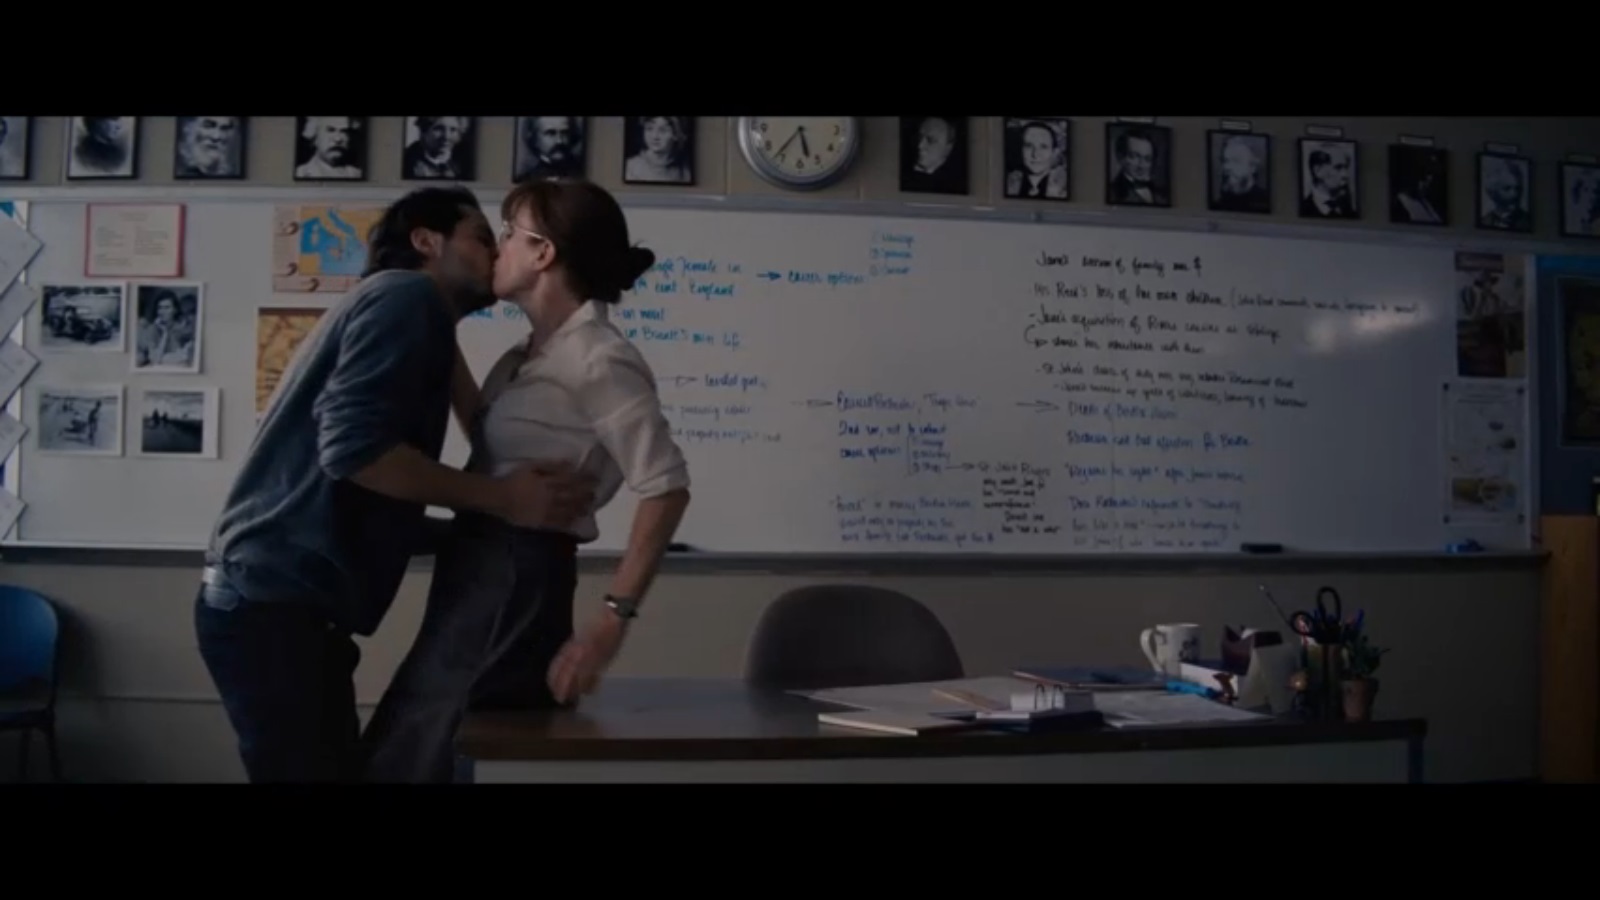 Teacher kissing student